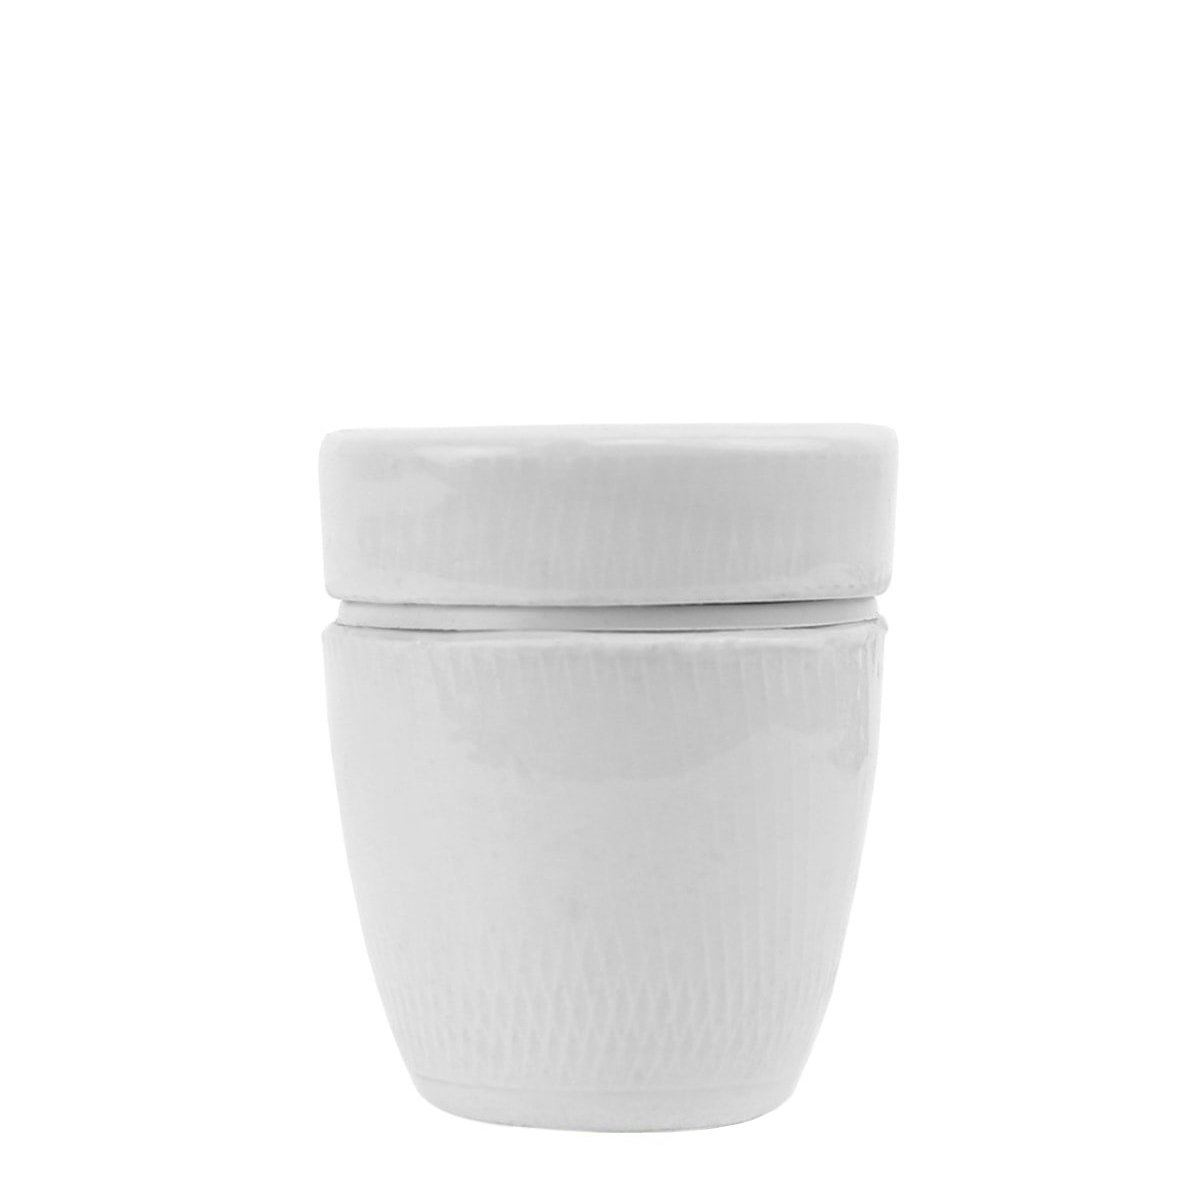 Douille lampe en porcelaine E27 - Ø 10 mm